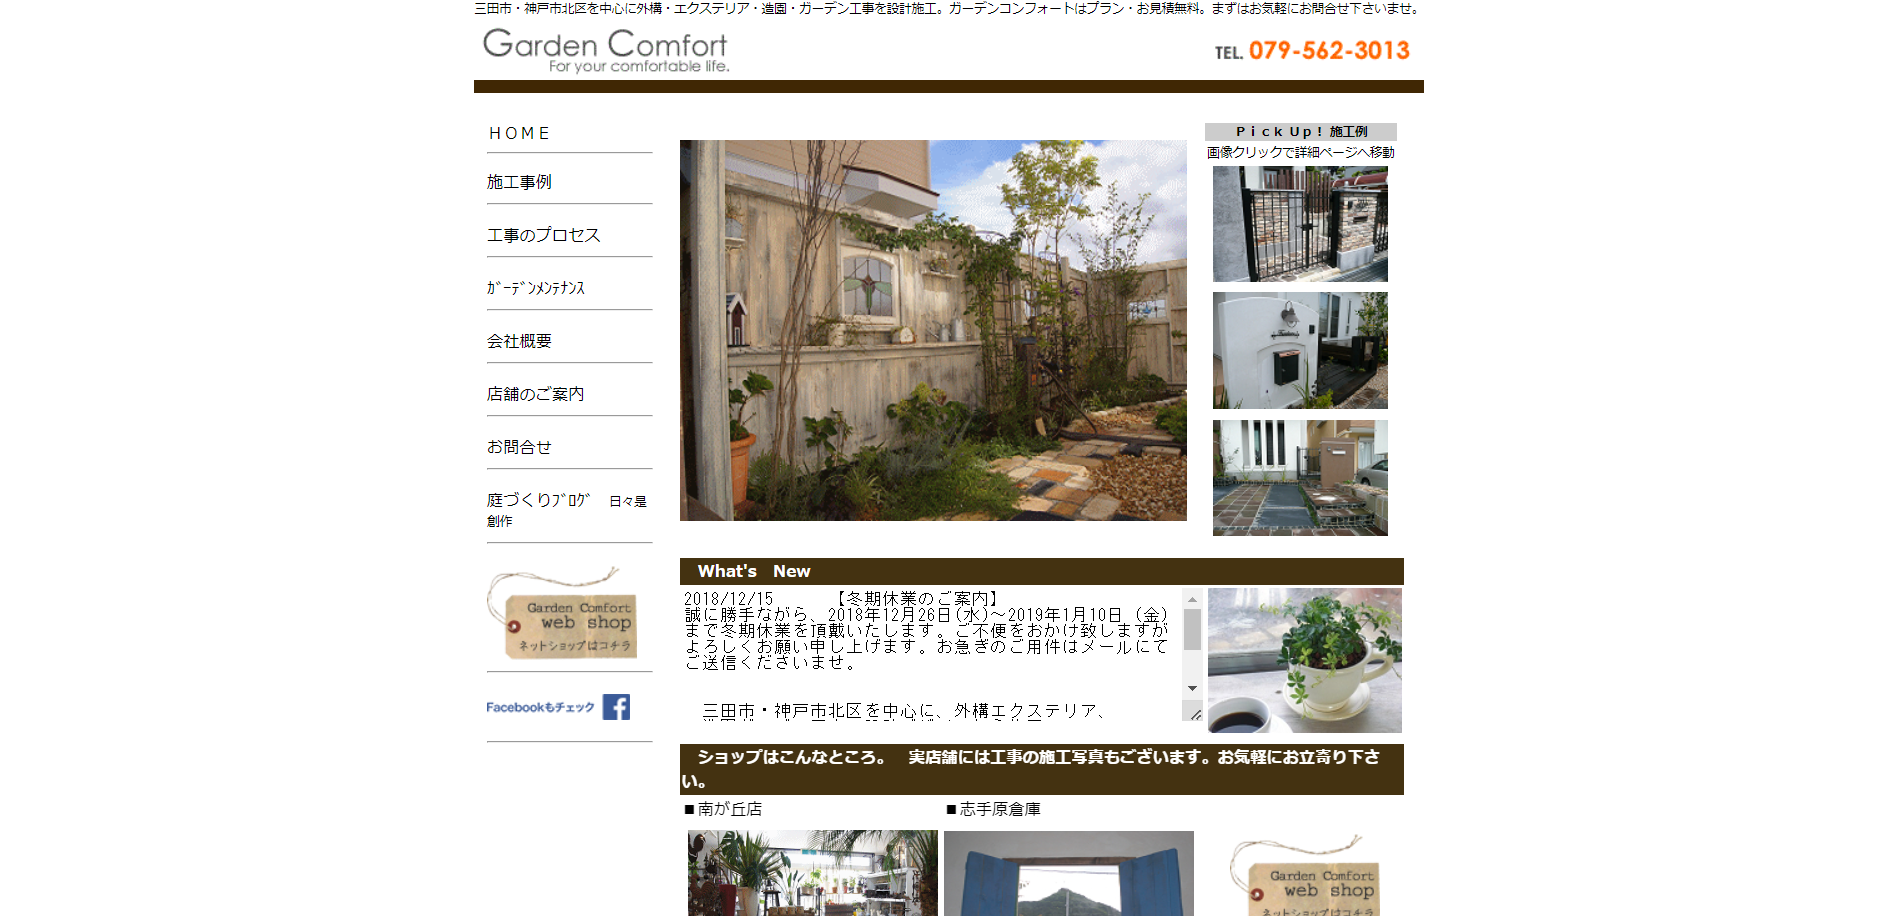 三田市で評判のおすすめ外構業者ランキング 第3位 ガーデンコンフォート